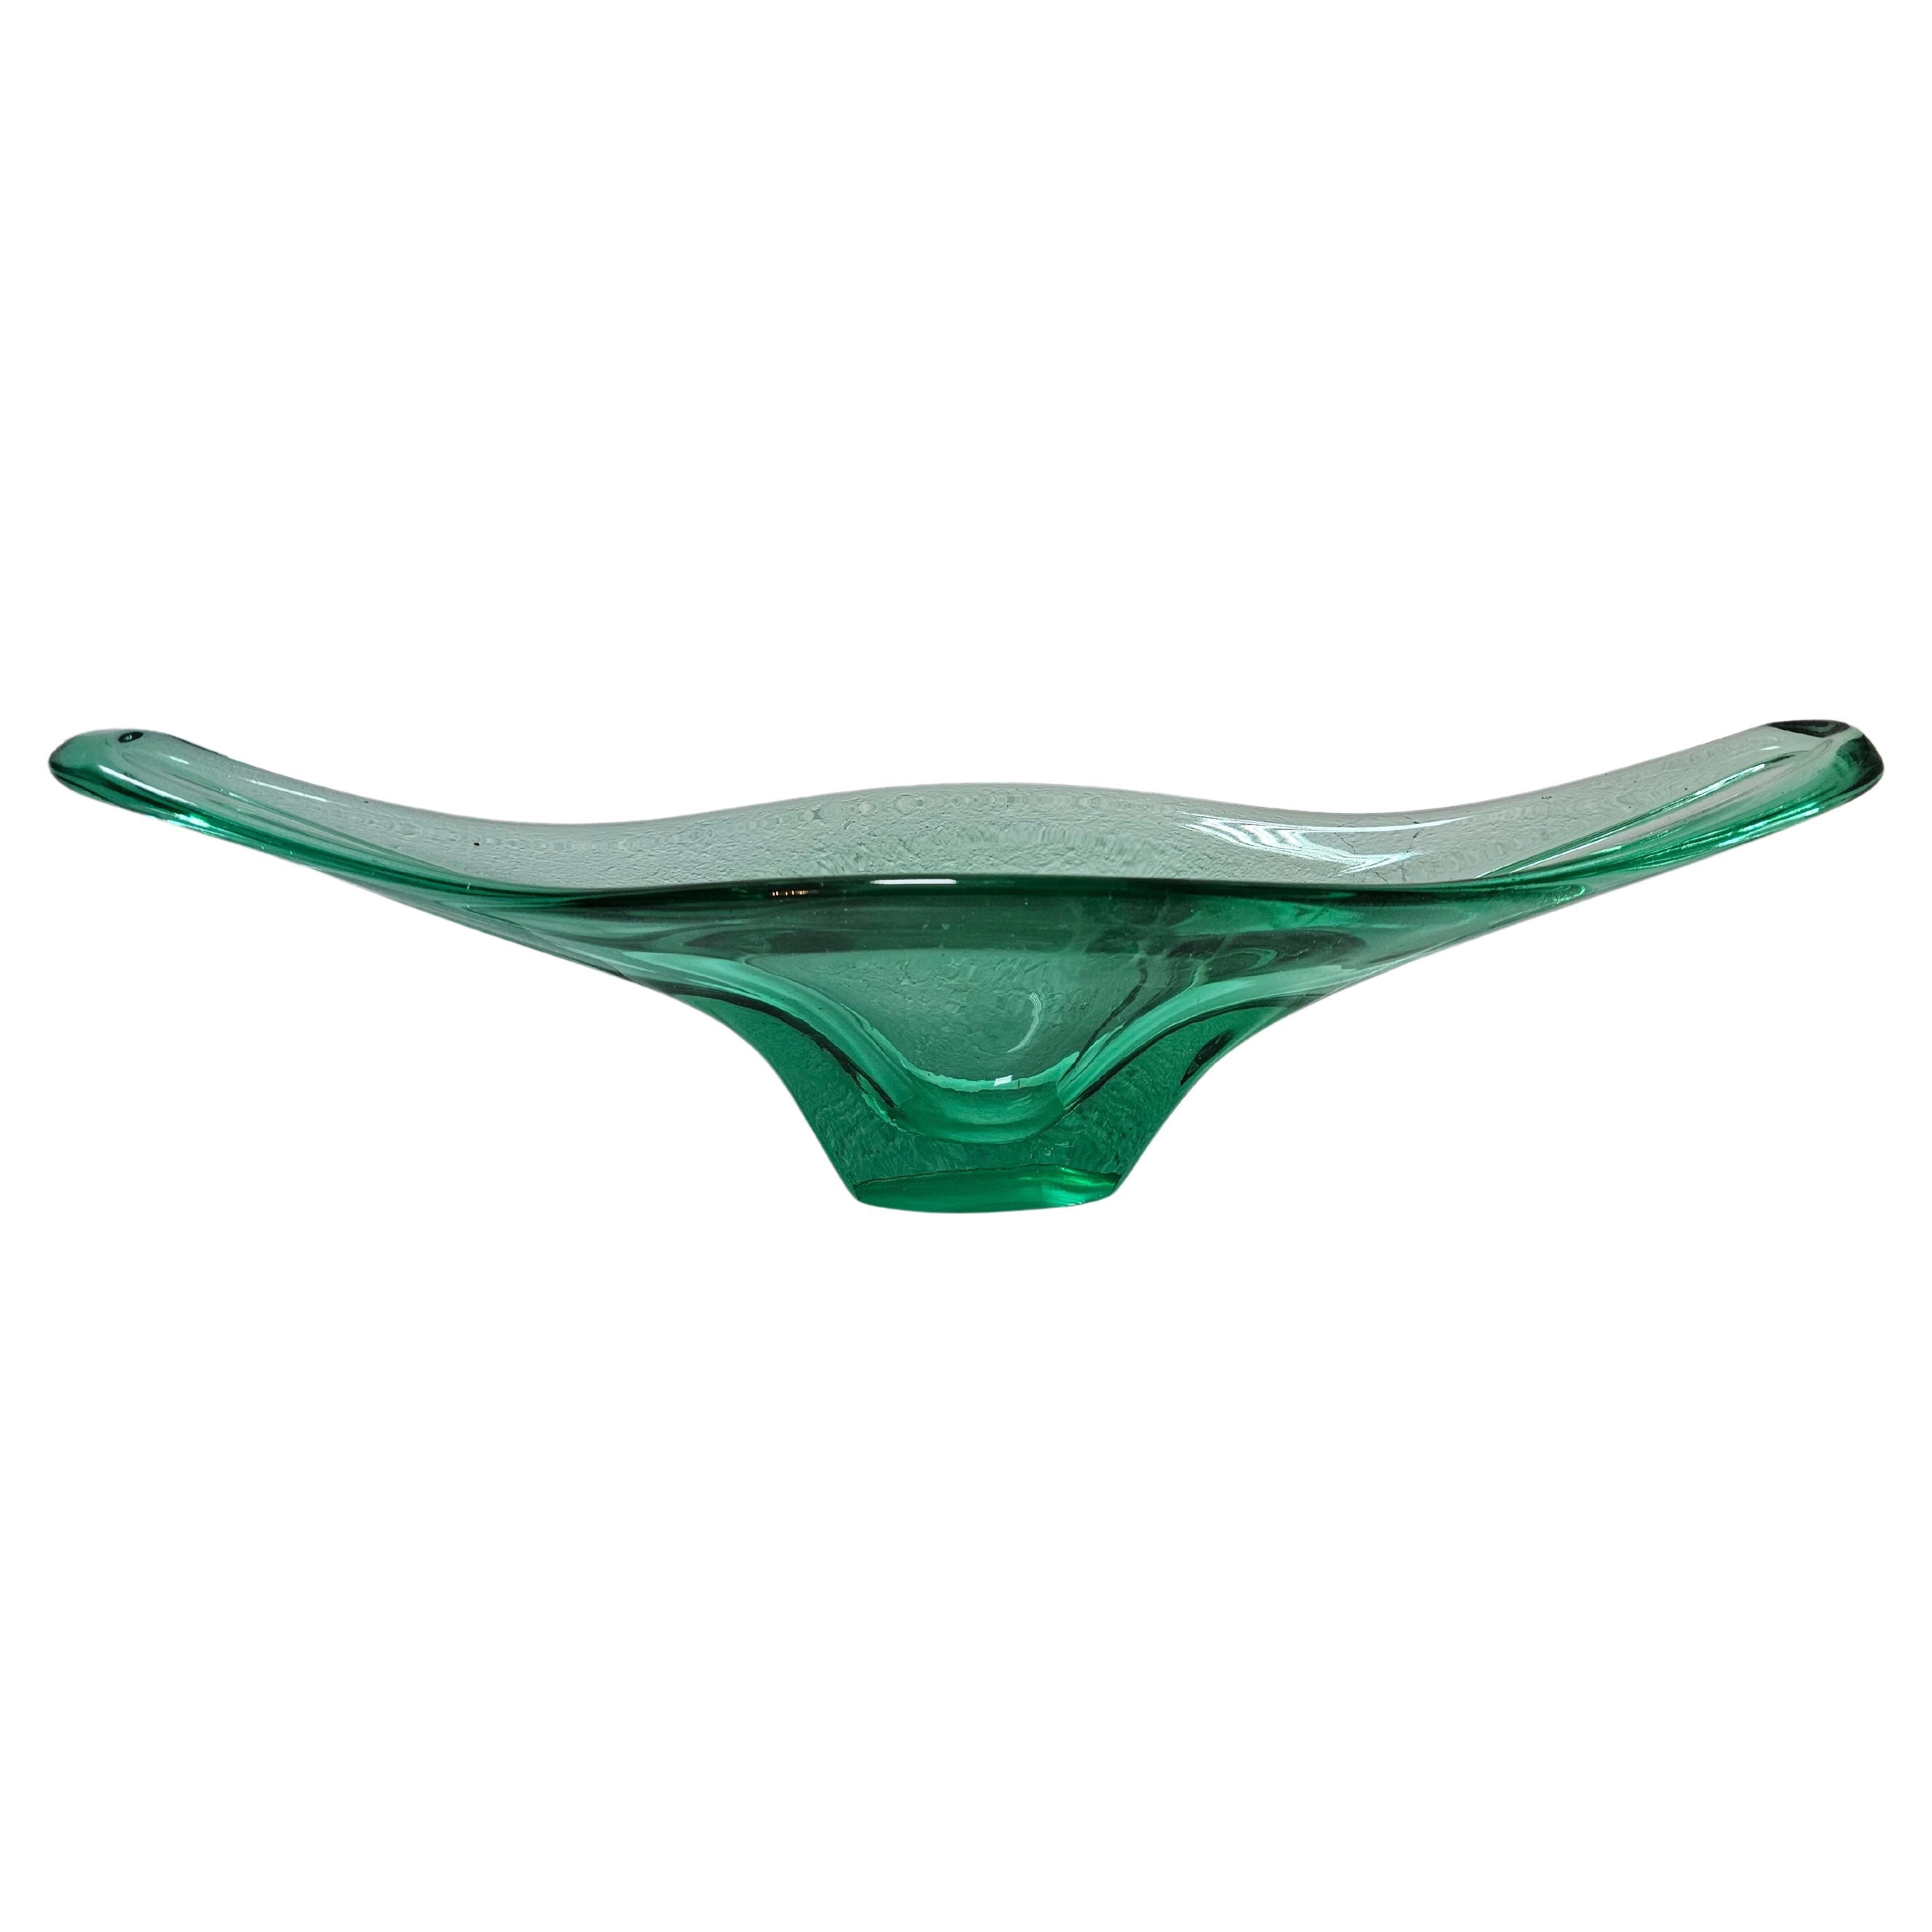 XXL Green Murano Glass Bowl shaped as Gondola, Italy 1970s